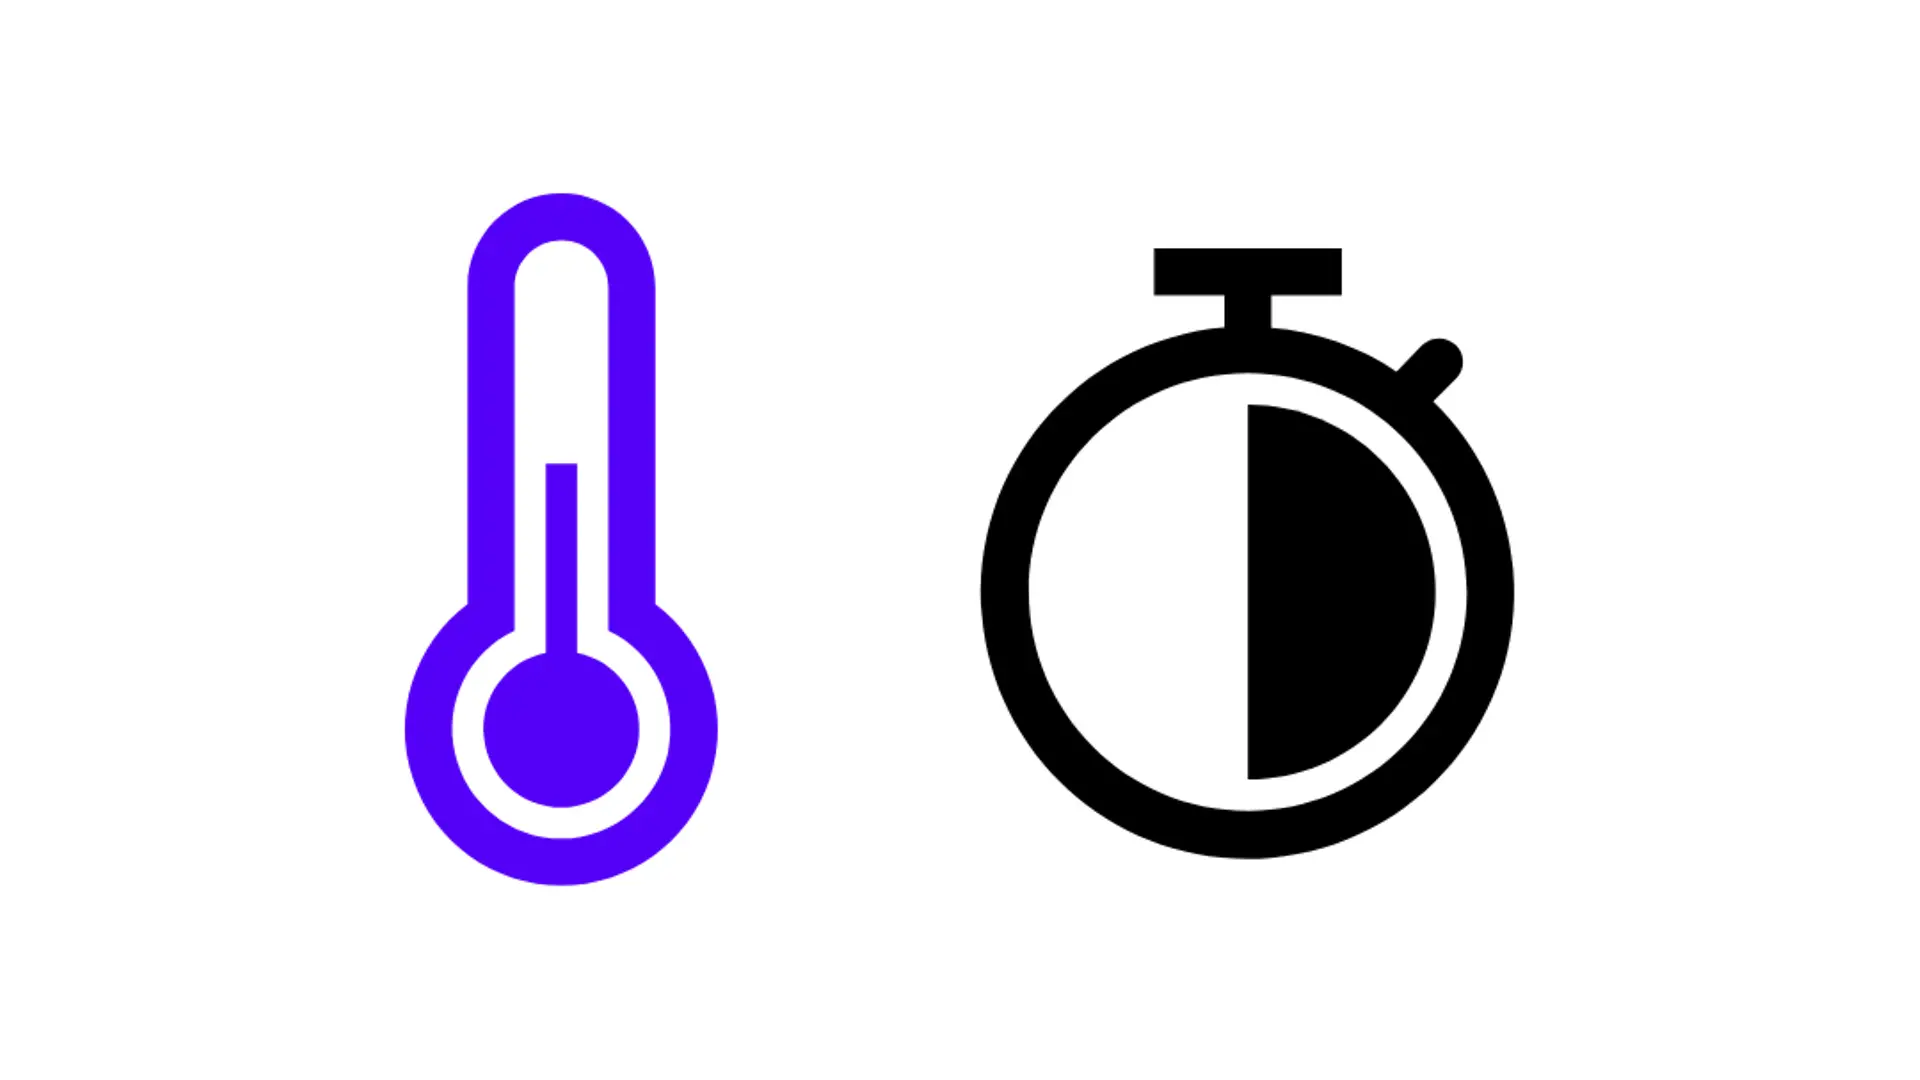 símbolo azul para termómetro y símbolo de reloj, media hora